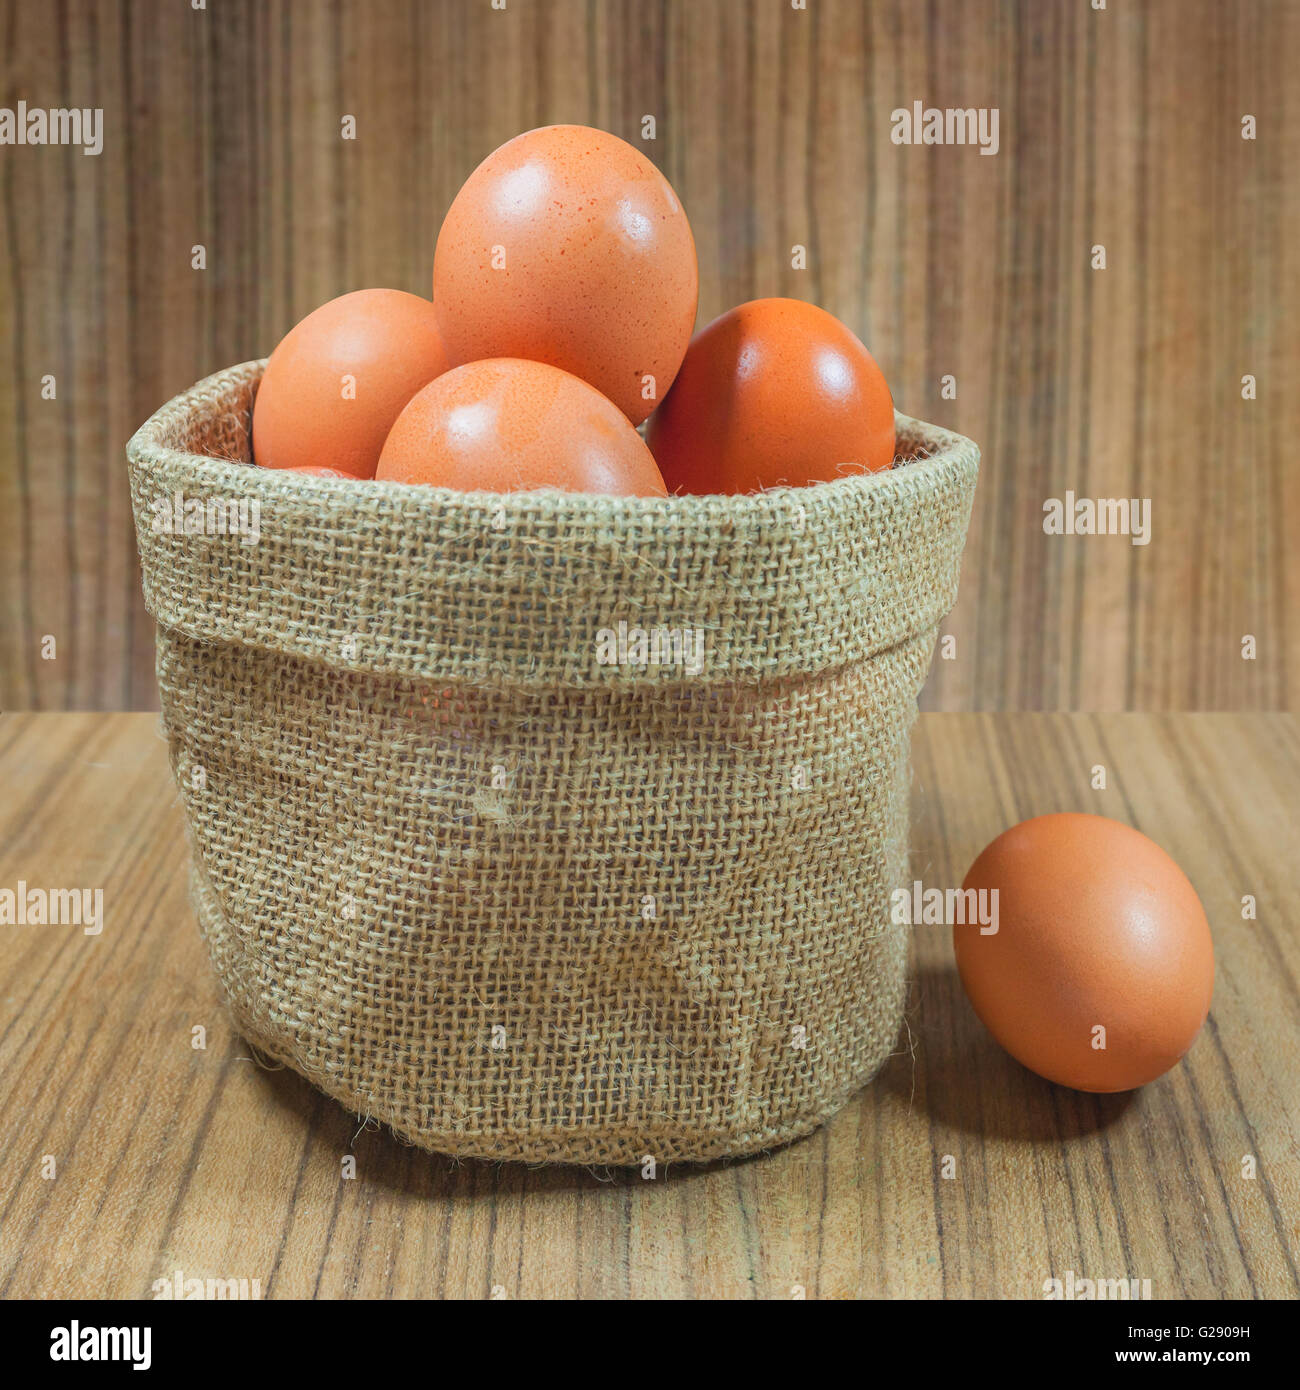 Eggs in basket on wood.eggs.egg.brown.rawfood. Stock Photo